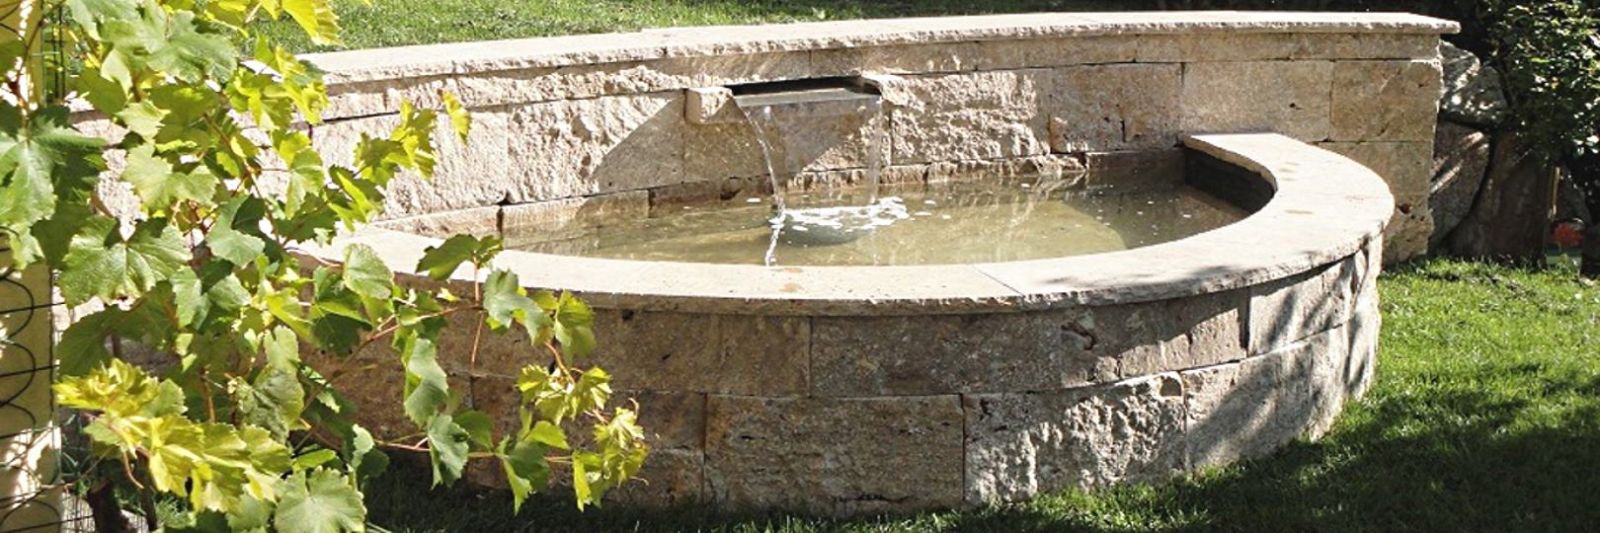 Brunnen mit Mauersteinen aus Travertin